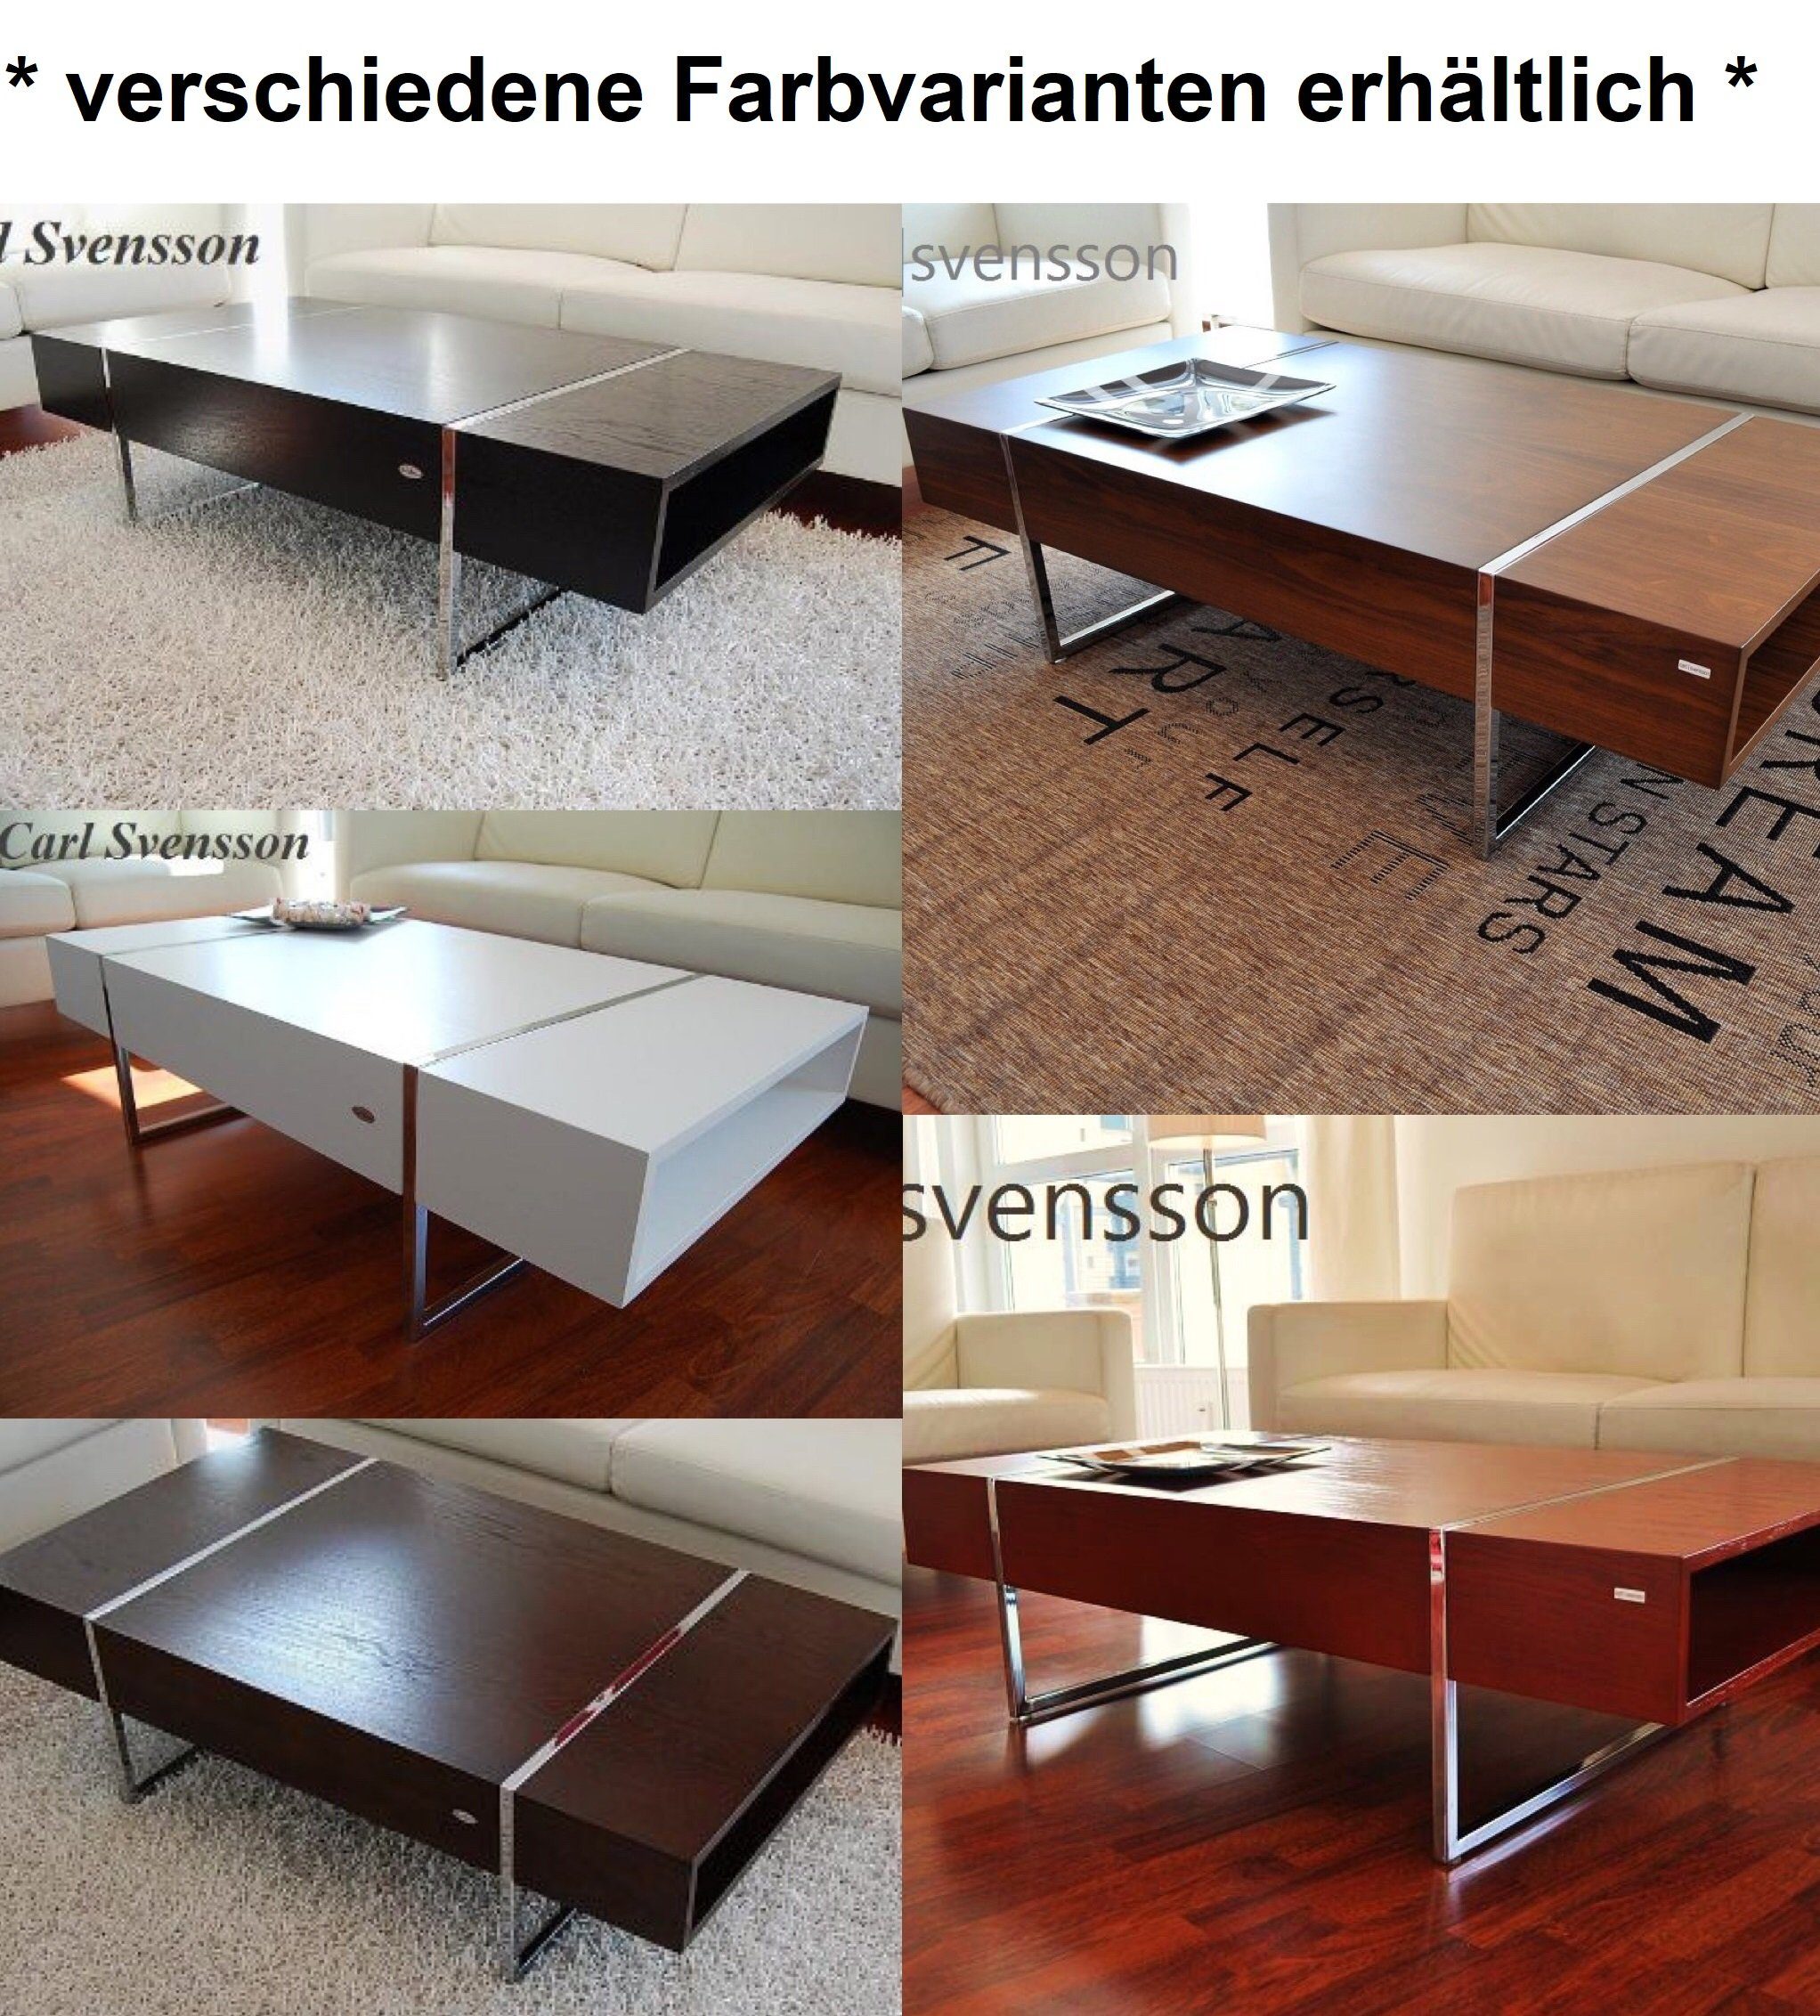 Schwarz svensson Tisch Couchtisch Chrom Design Carl Couchtisch Svensson carl N-111